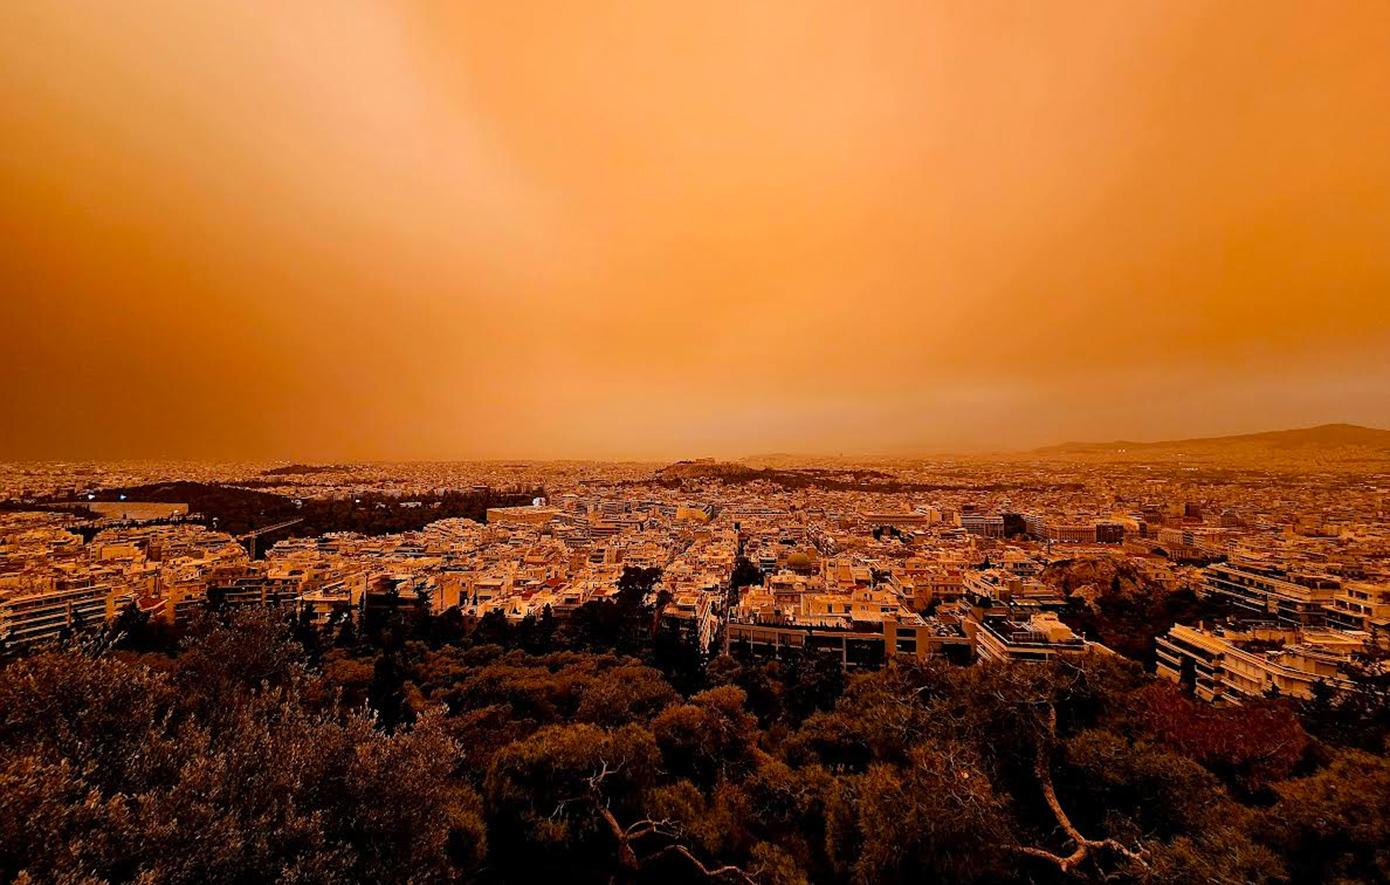 Κολυδάς: «Το εντονότερο γεγονός που έχει καταγραφεί στην Αθήνα» – Πώς δημιουργήθηκε το «απόκοσμο» χρώμα από την αφρικανική σκόνη